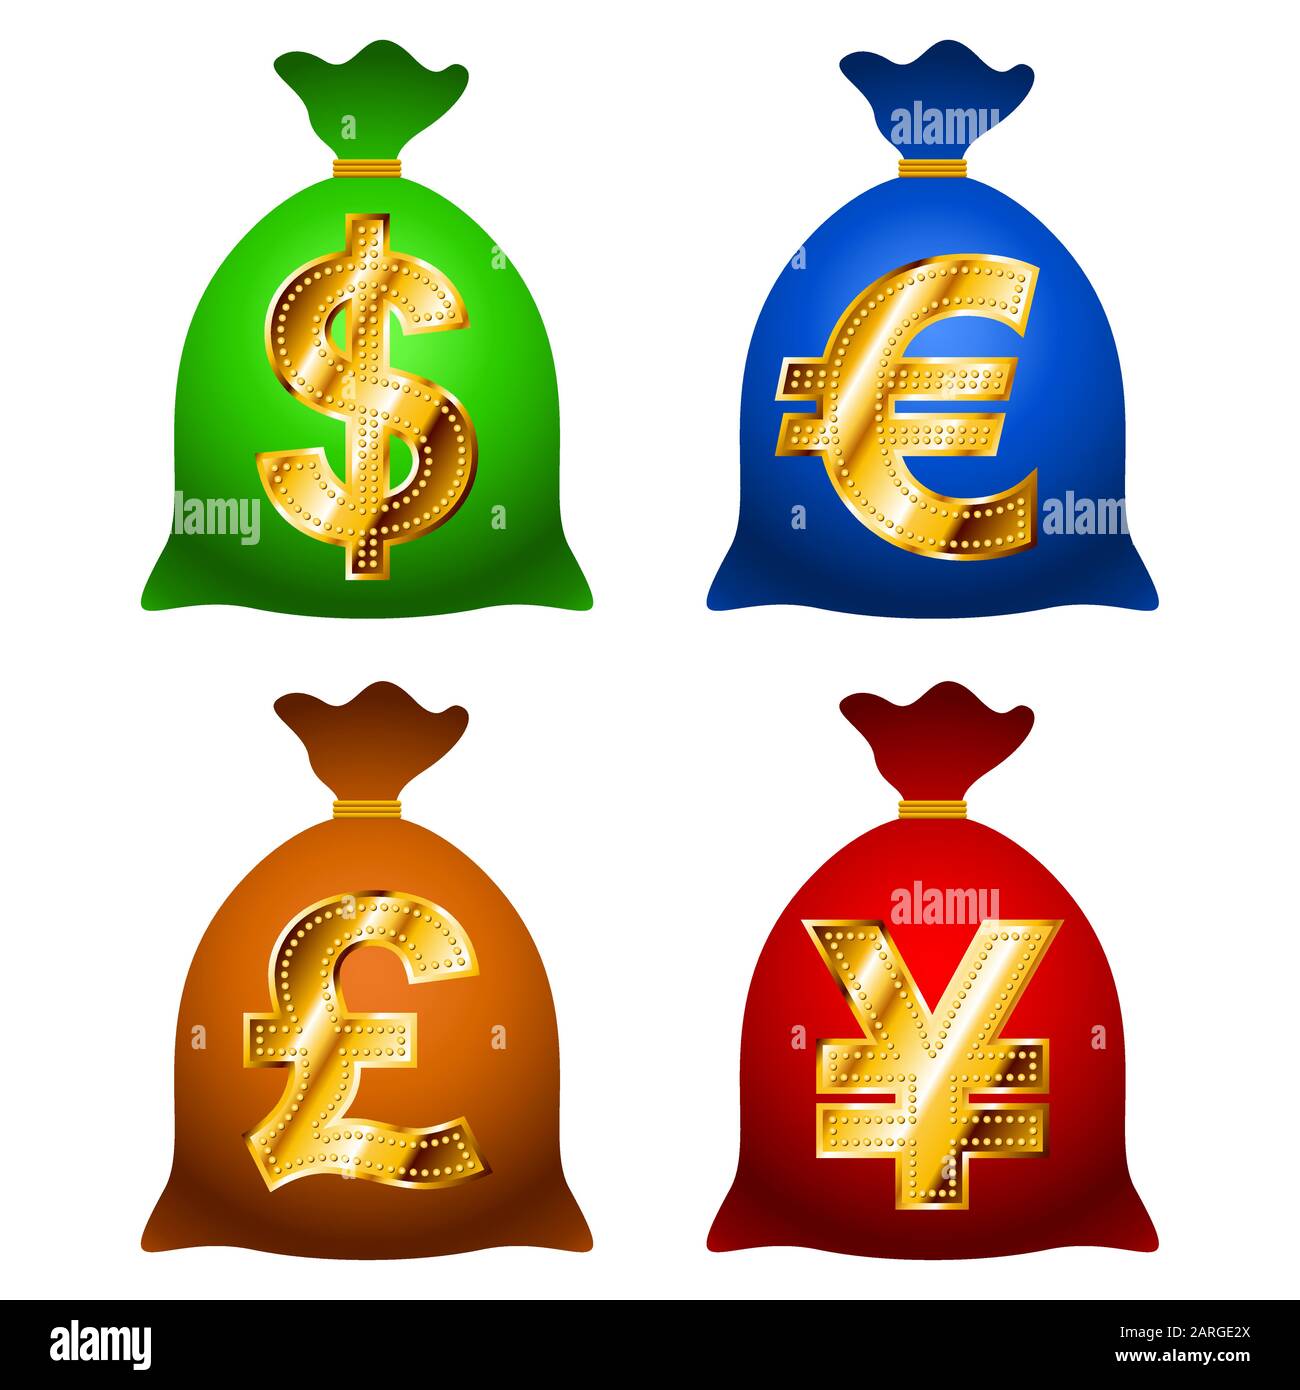 Borse di valuta finanziaria USD, EUR, GBP, JPY con segni d'oro di etichette di valuta; EPS8 Illustrazione Vettoriale